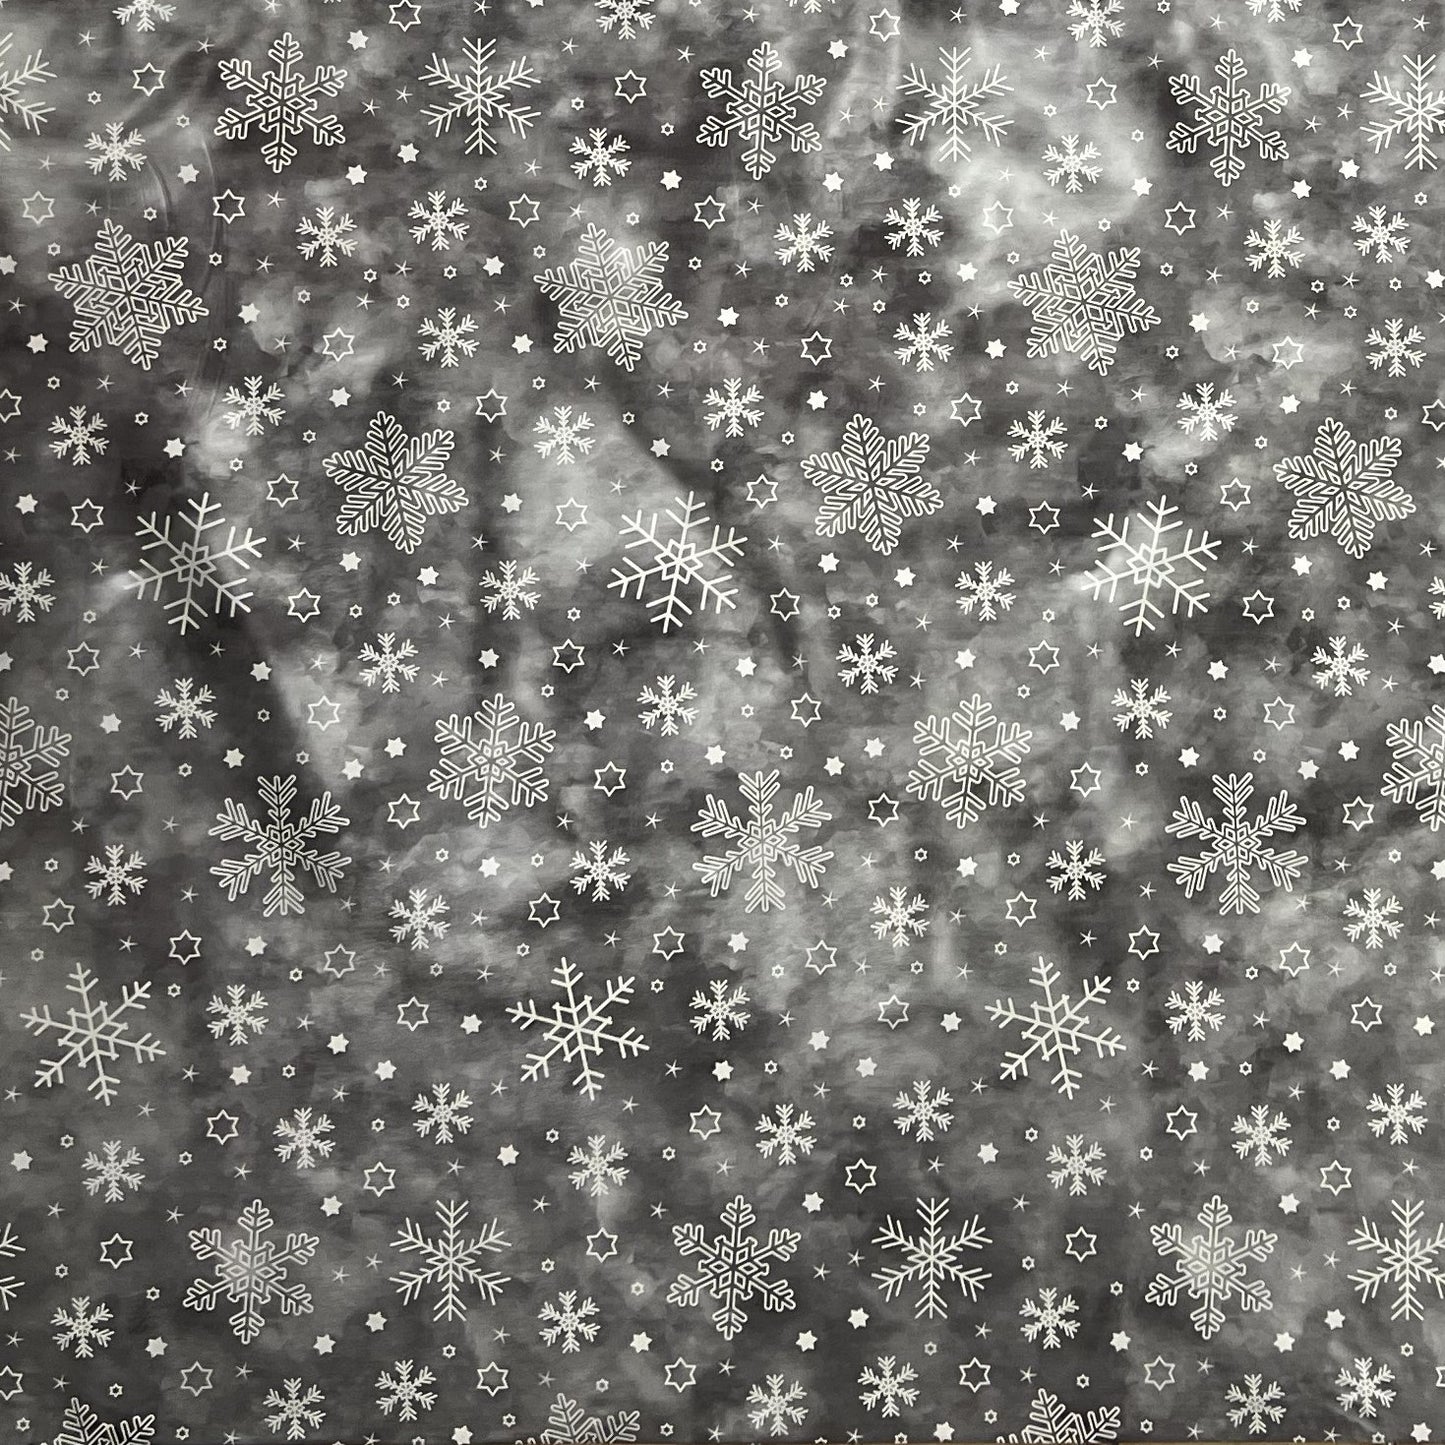 KEVKUS Wachstuch Tischdecke 01730-01 grau Weihnachten Advent Schnee wählbar in eckig, rund und oval -